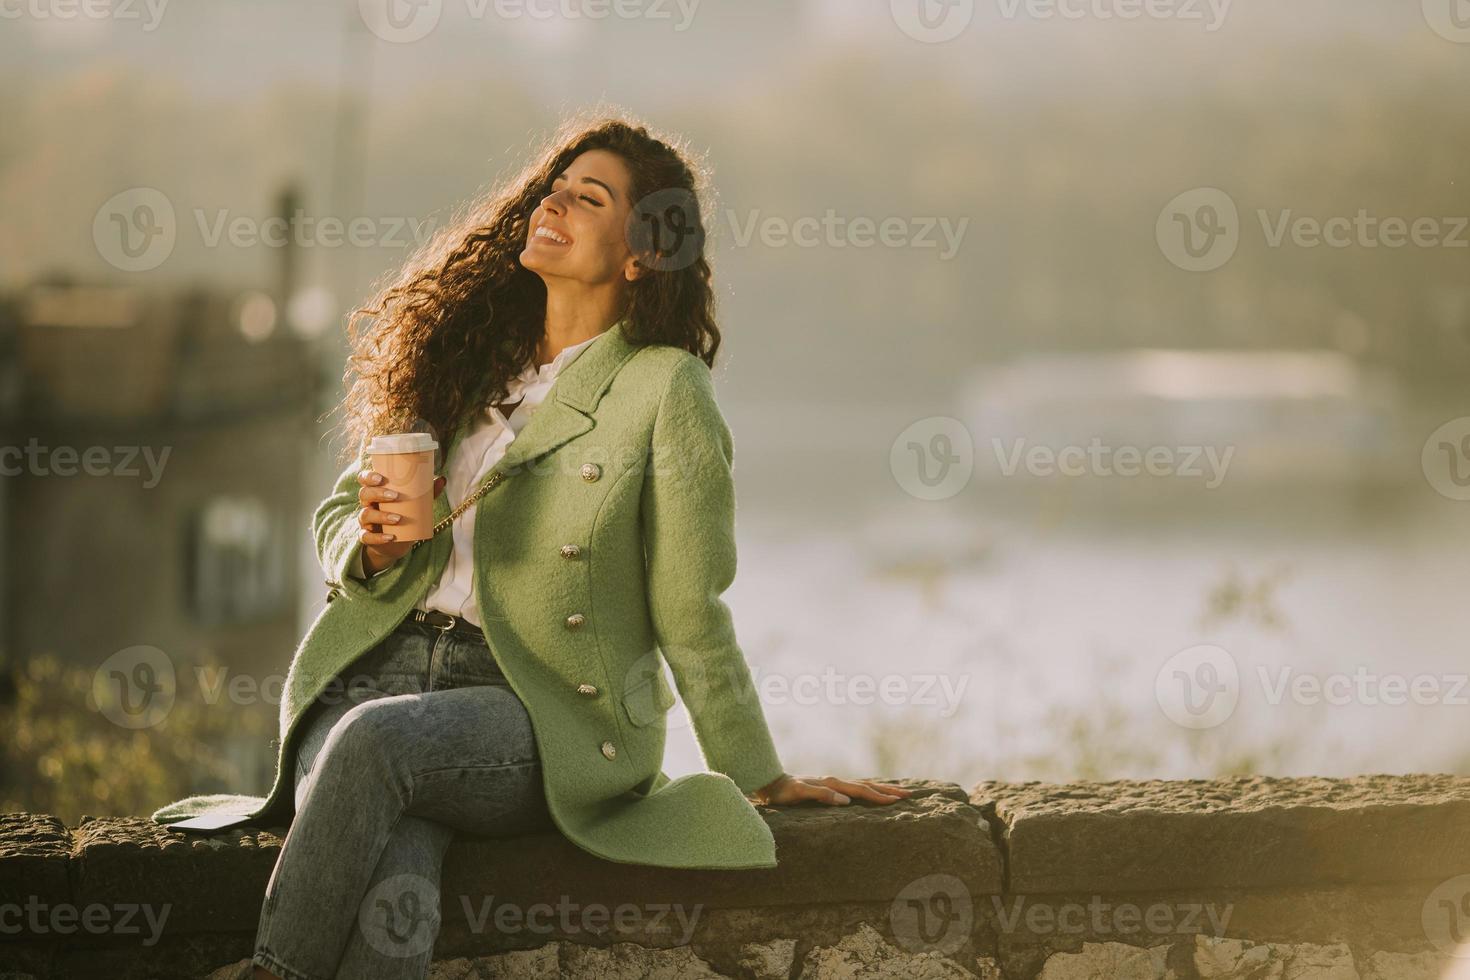 hübsche junge Frau, die die Herbstsonne genießt, während sie am Fluss sitzt und Kaffee zum Mitnehmen trinkt? foto